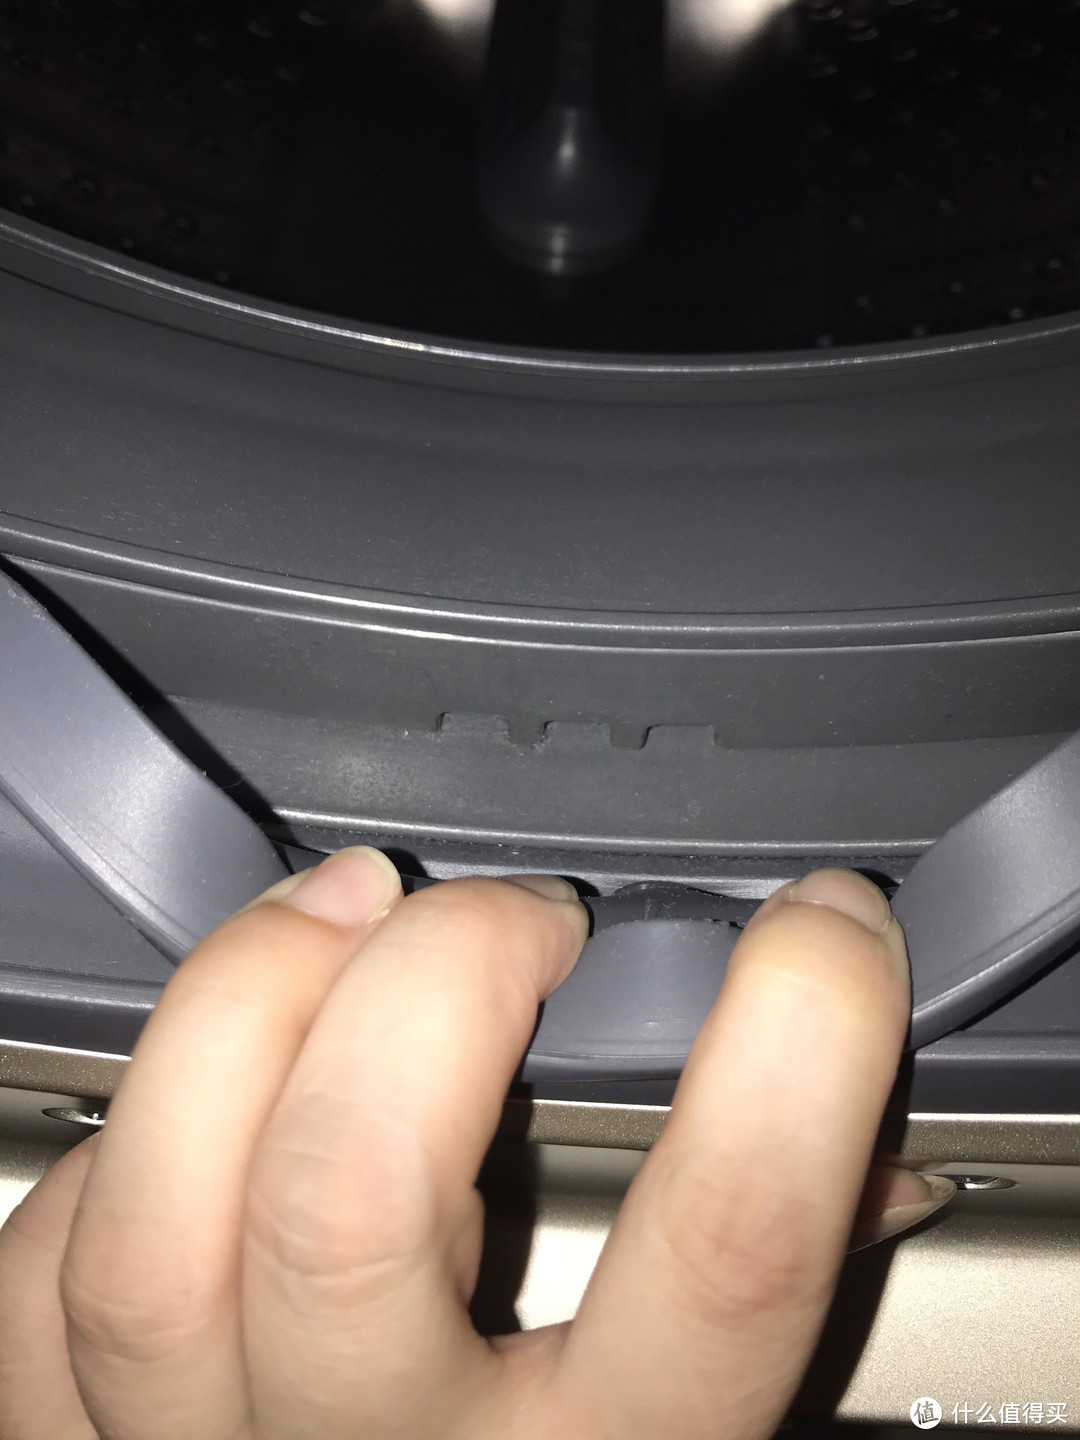 东芝X6通过斜筒导流和一体烘干彻底解决了一直困扰我的传统直滚筒洗衣机胶圈残留水和机体潮湿的问题。 